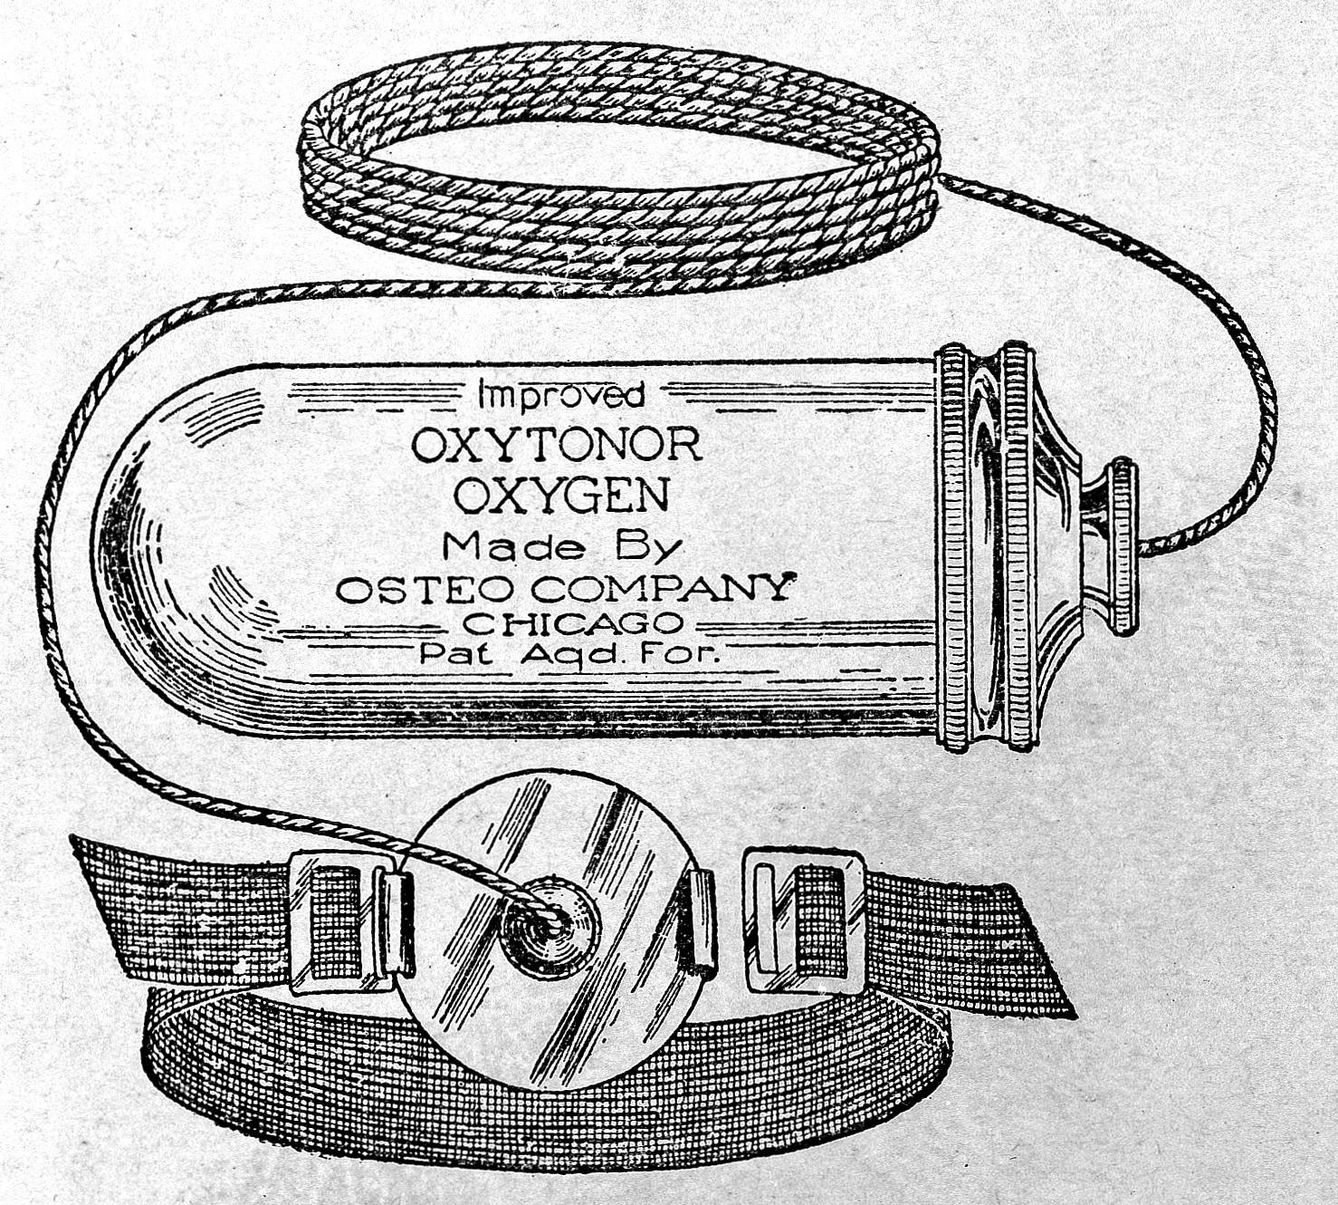 El Improved Oxytonor, una de las copias del aparato. (Wikimedia)